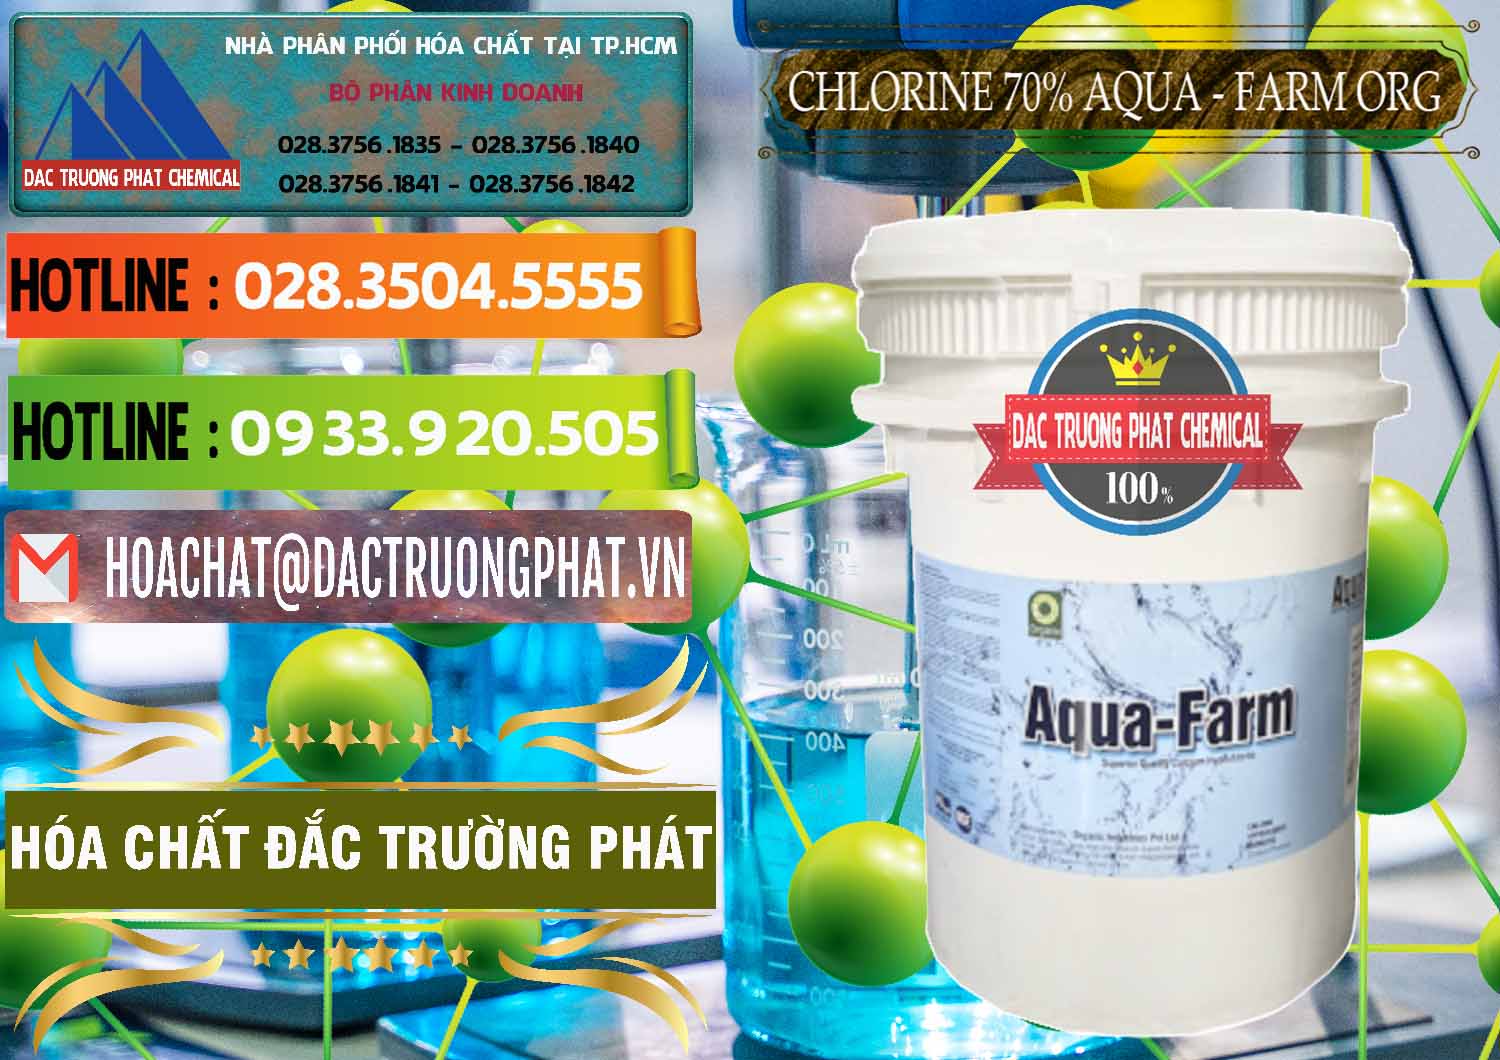 Nhà phân phối _ bán Chlorine – Clorin 70% Aqua - Farm ORG Organic Ấn Độ India - 0246 - Phân phối _ bán hóa chất tại TP.HCM - cungcaphoachat.com.vn